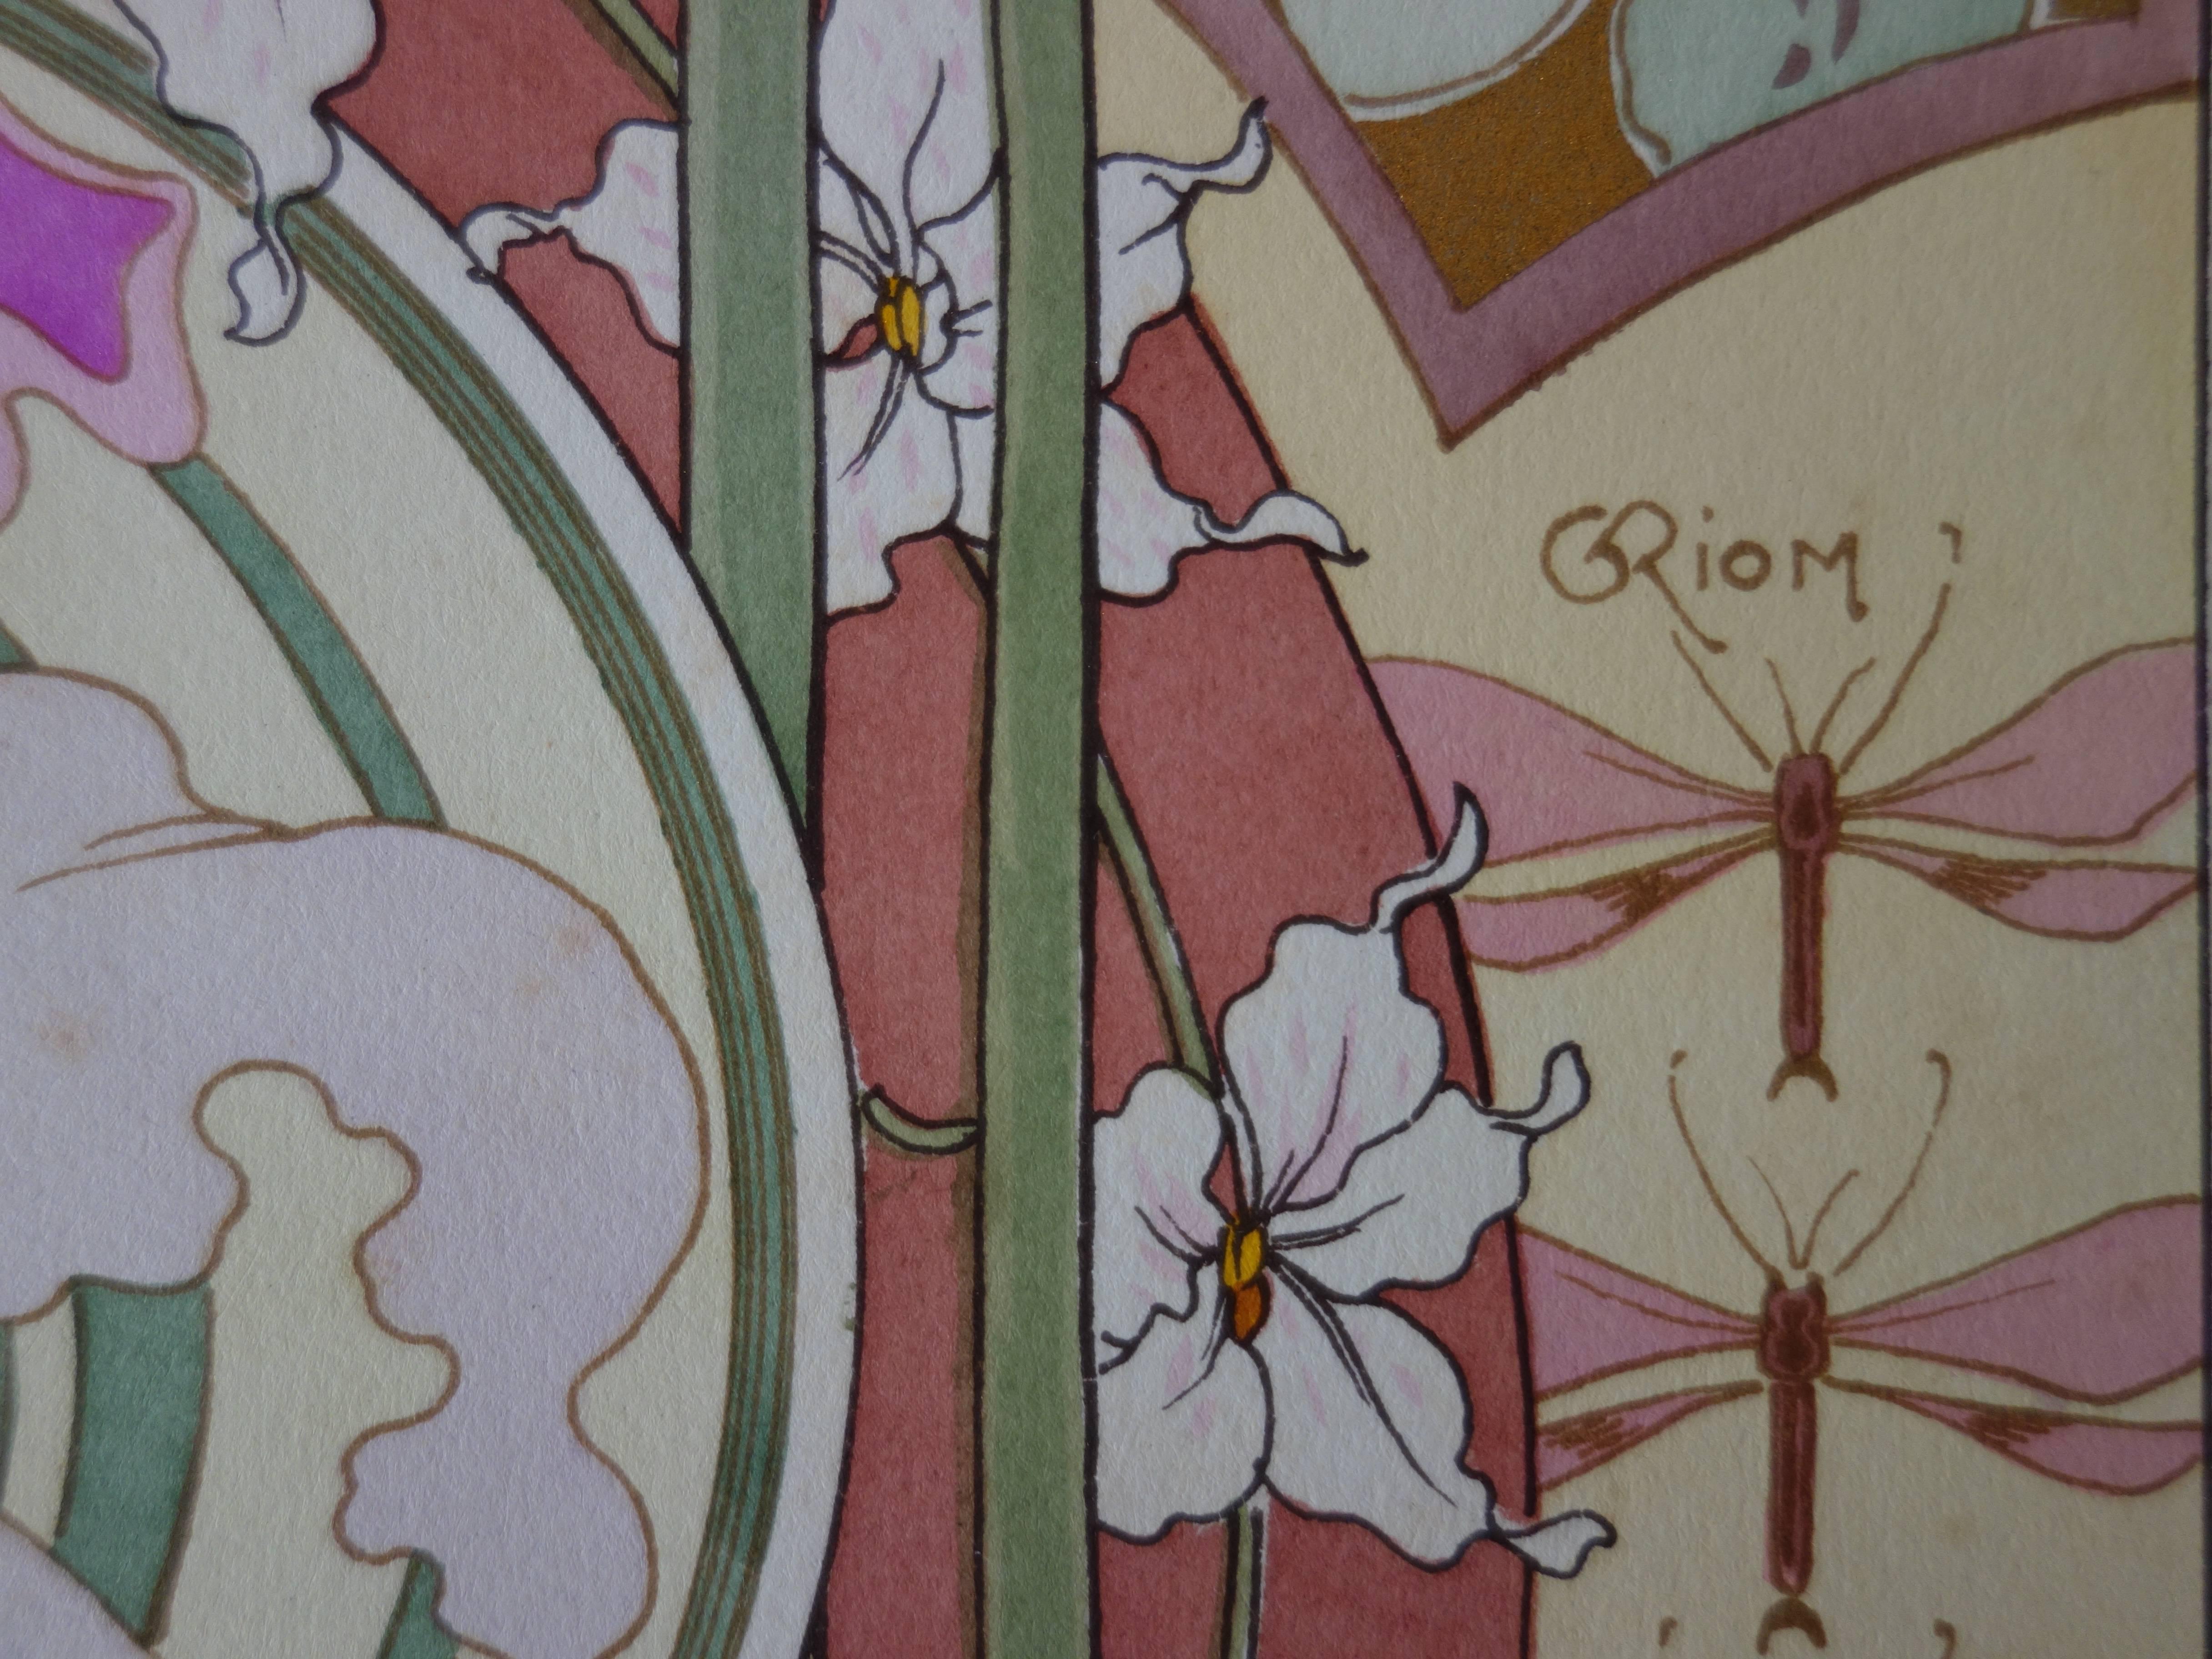 C RIOM : Orchids - Original Lithograph - Art Nouveau 1890s - Print by Unknown